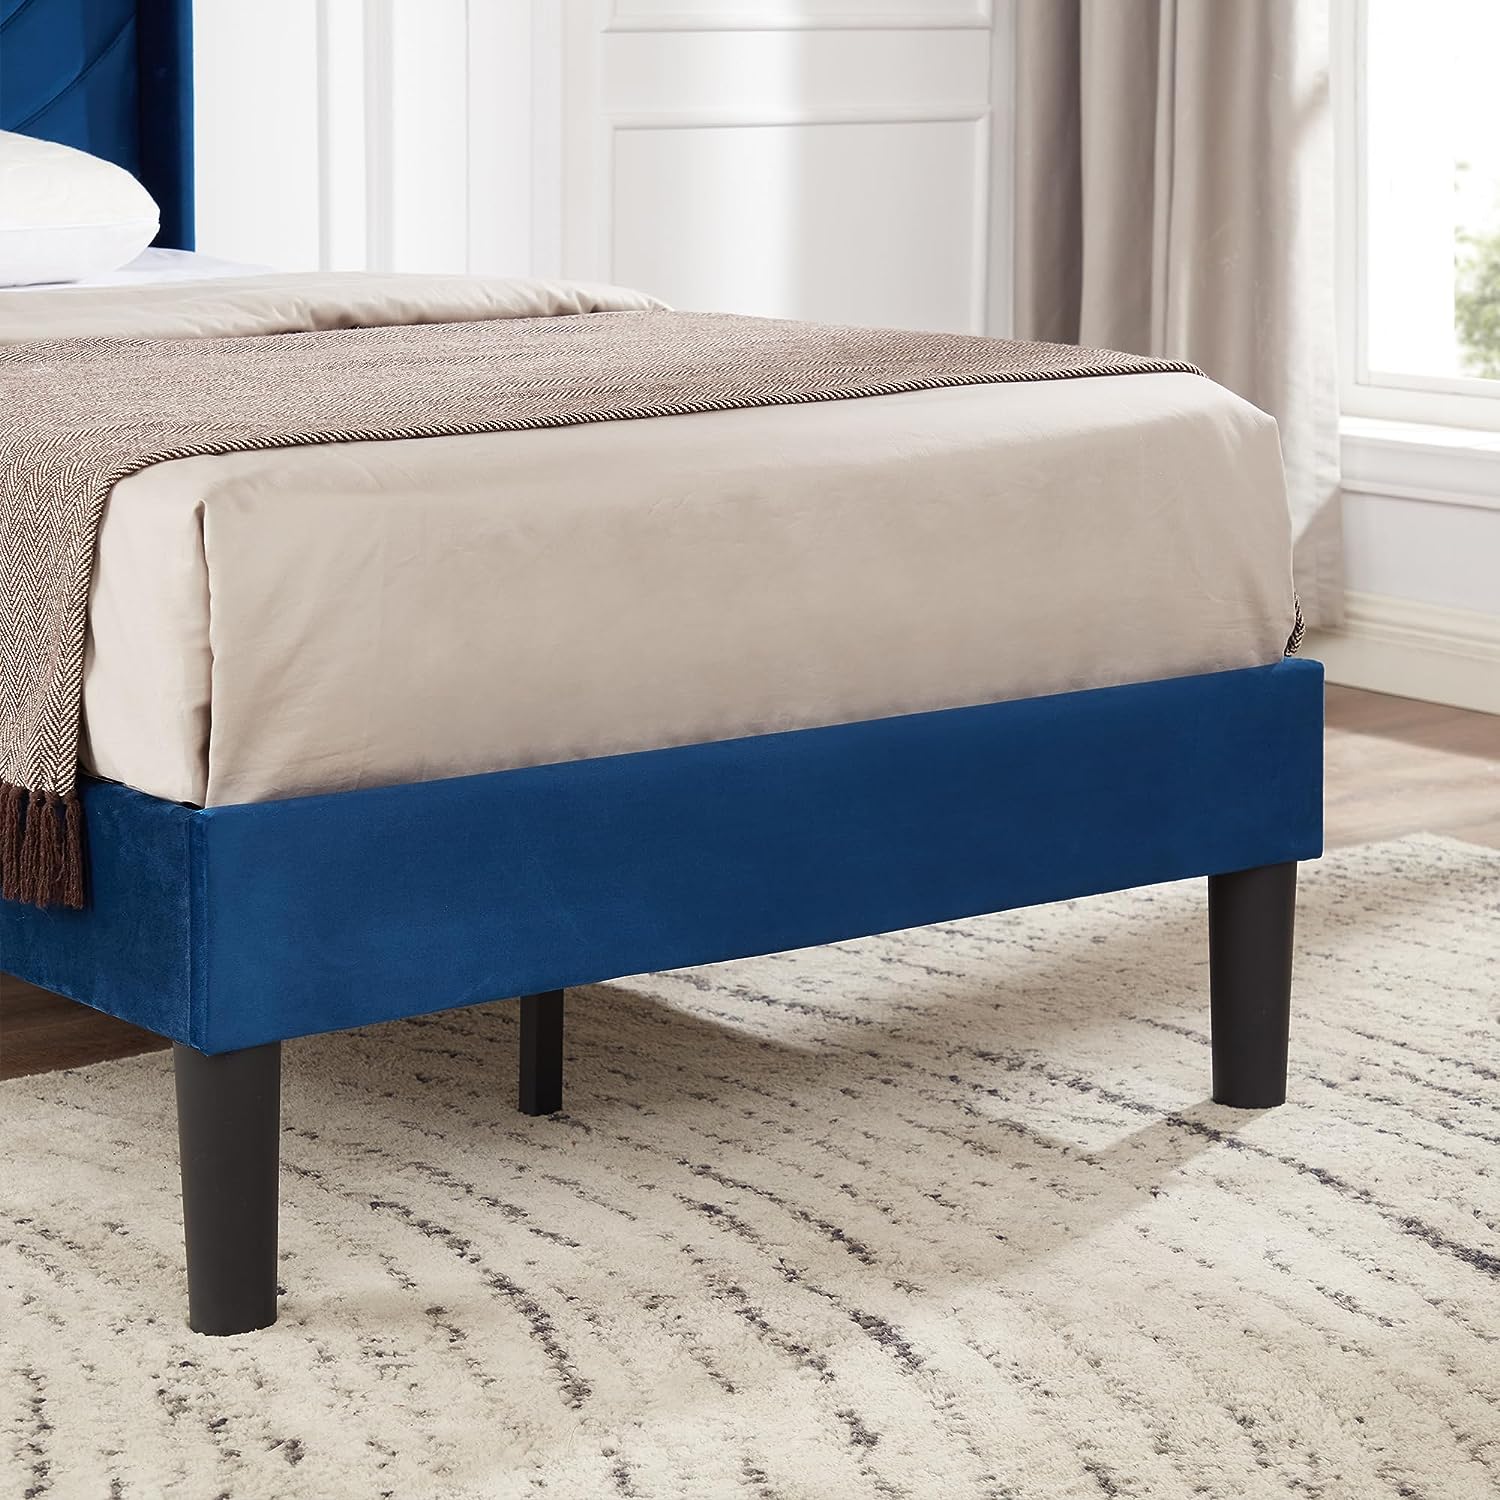 VECELO Upholstered Platform Bed Frame with Sheepskin Fabric Adjustable